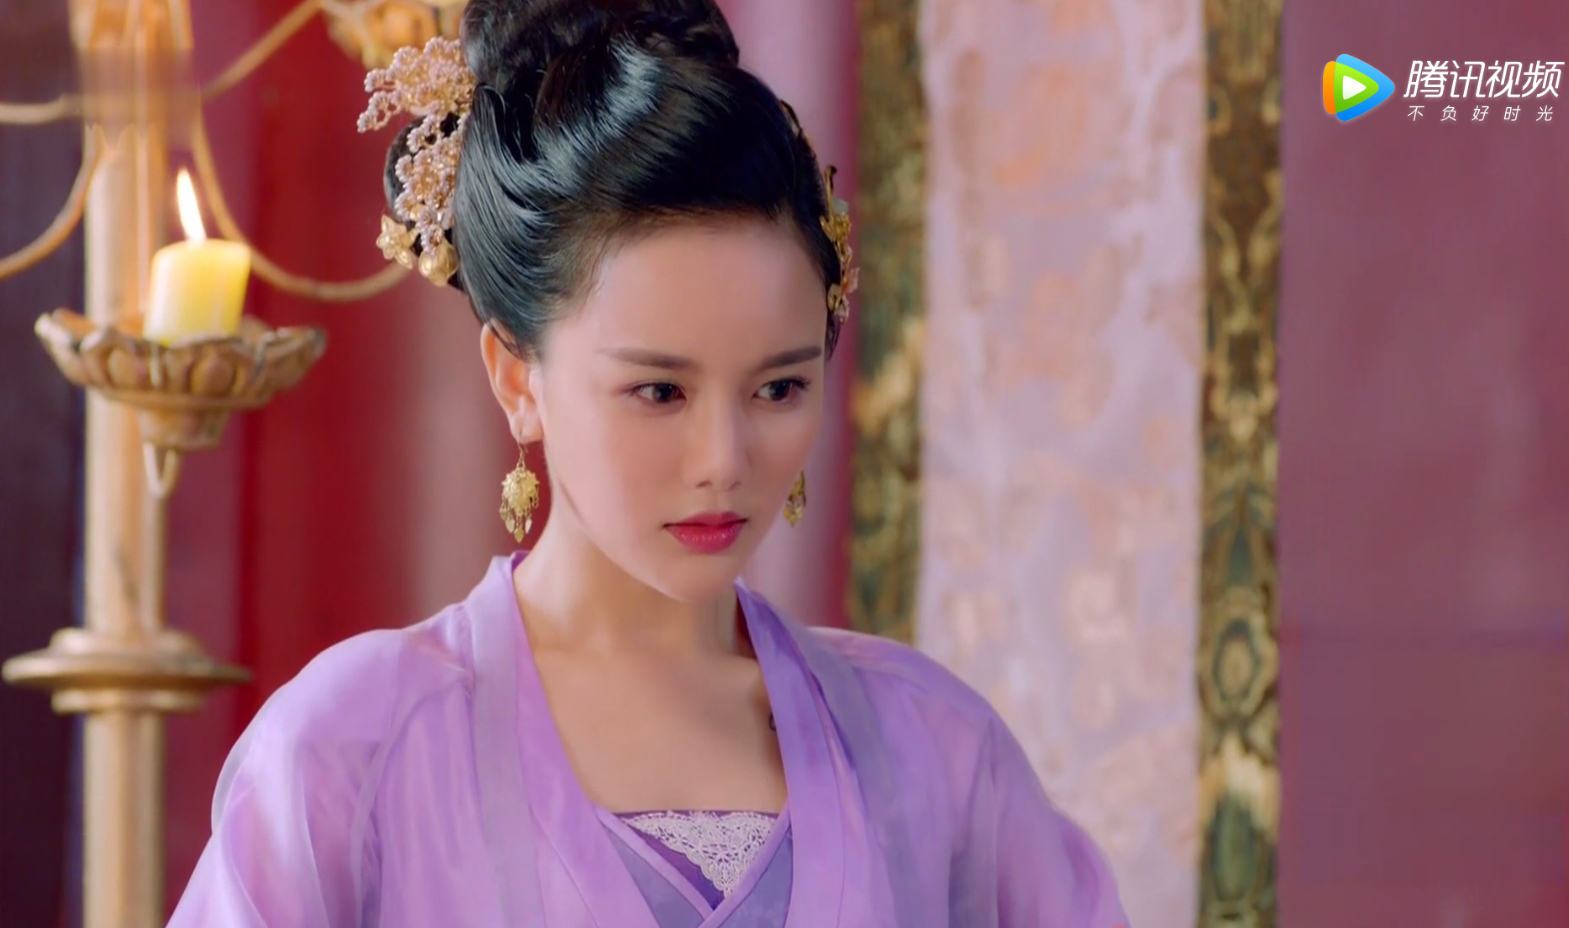 盘点网红南笙在楚乔传的5大造型:紫衣扮相最迷人,金衣华服贵气